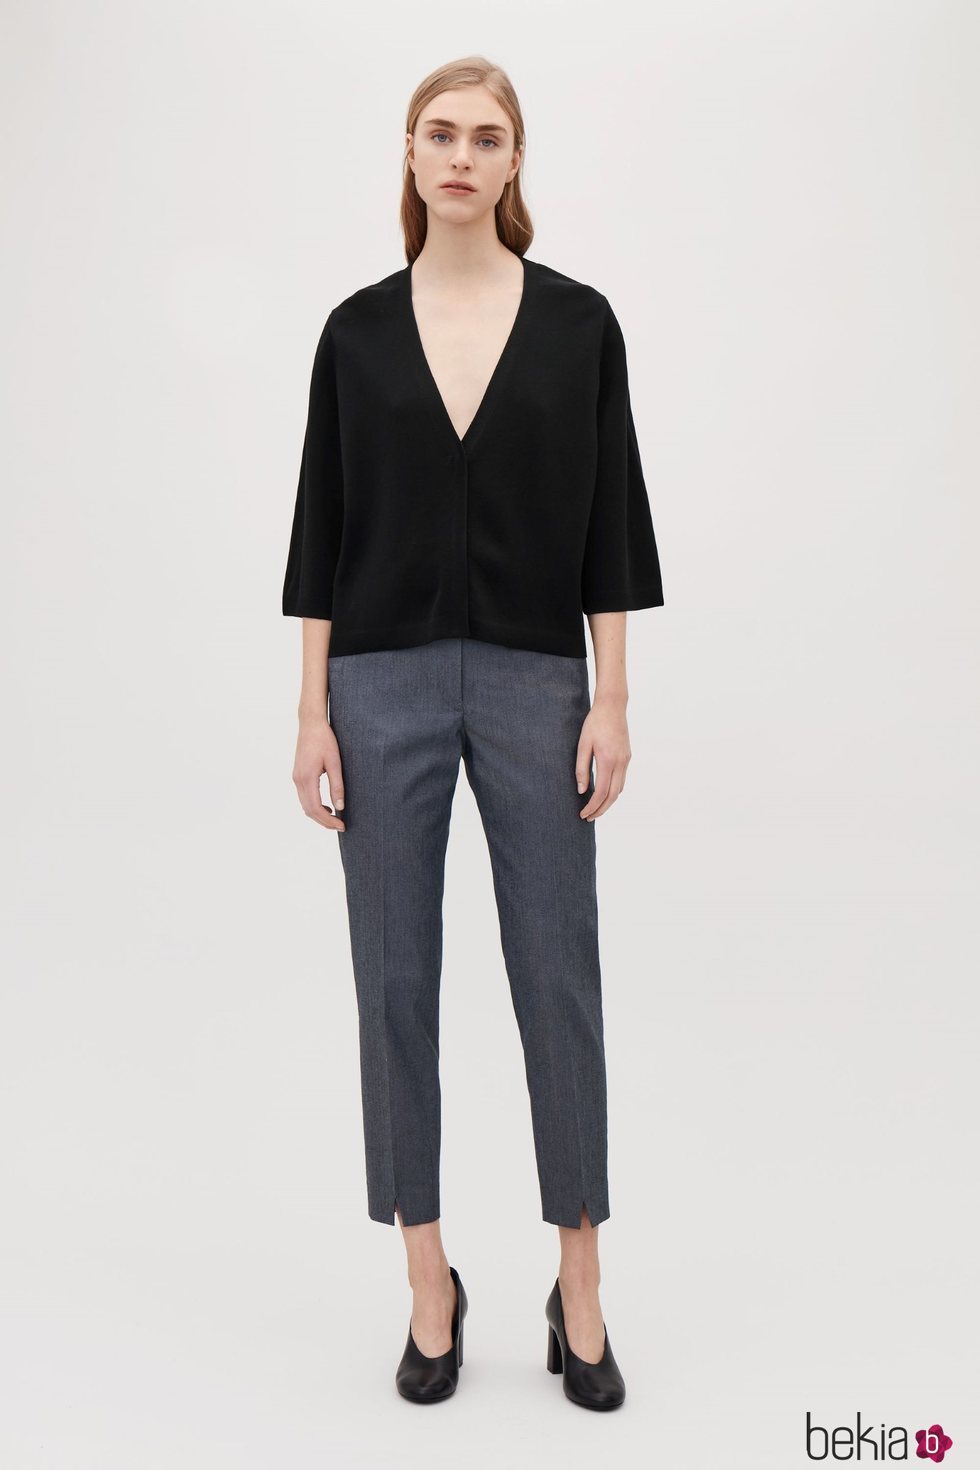 Blusa negra con escote en pico de la nueva colección atemporal de Cos 2018